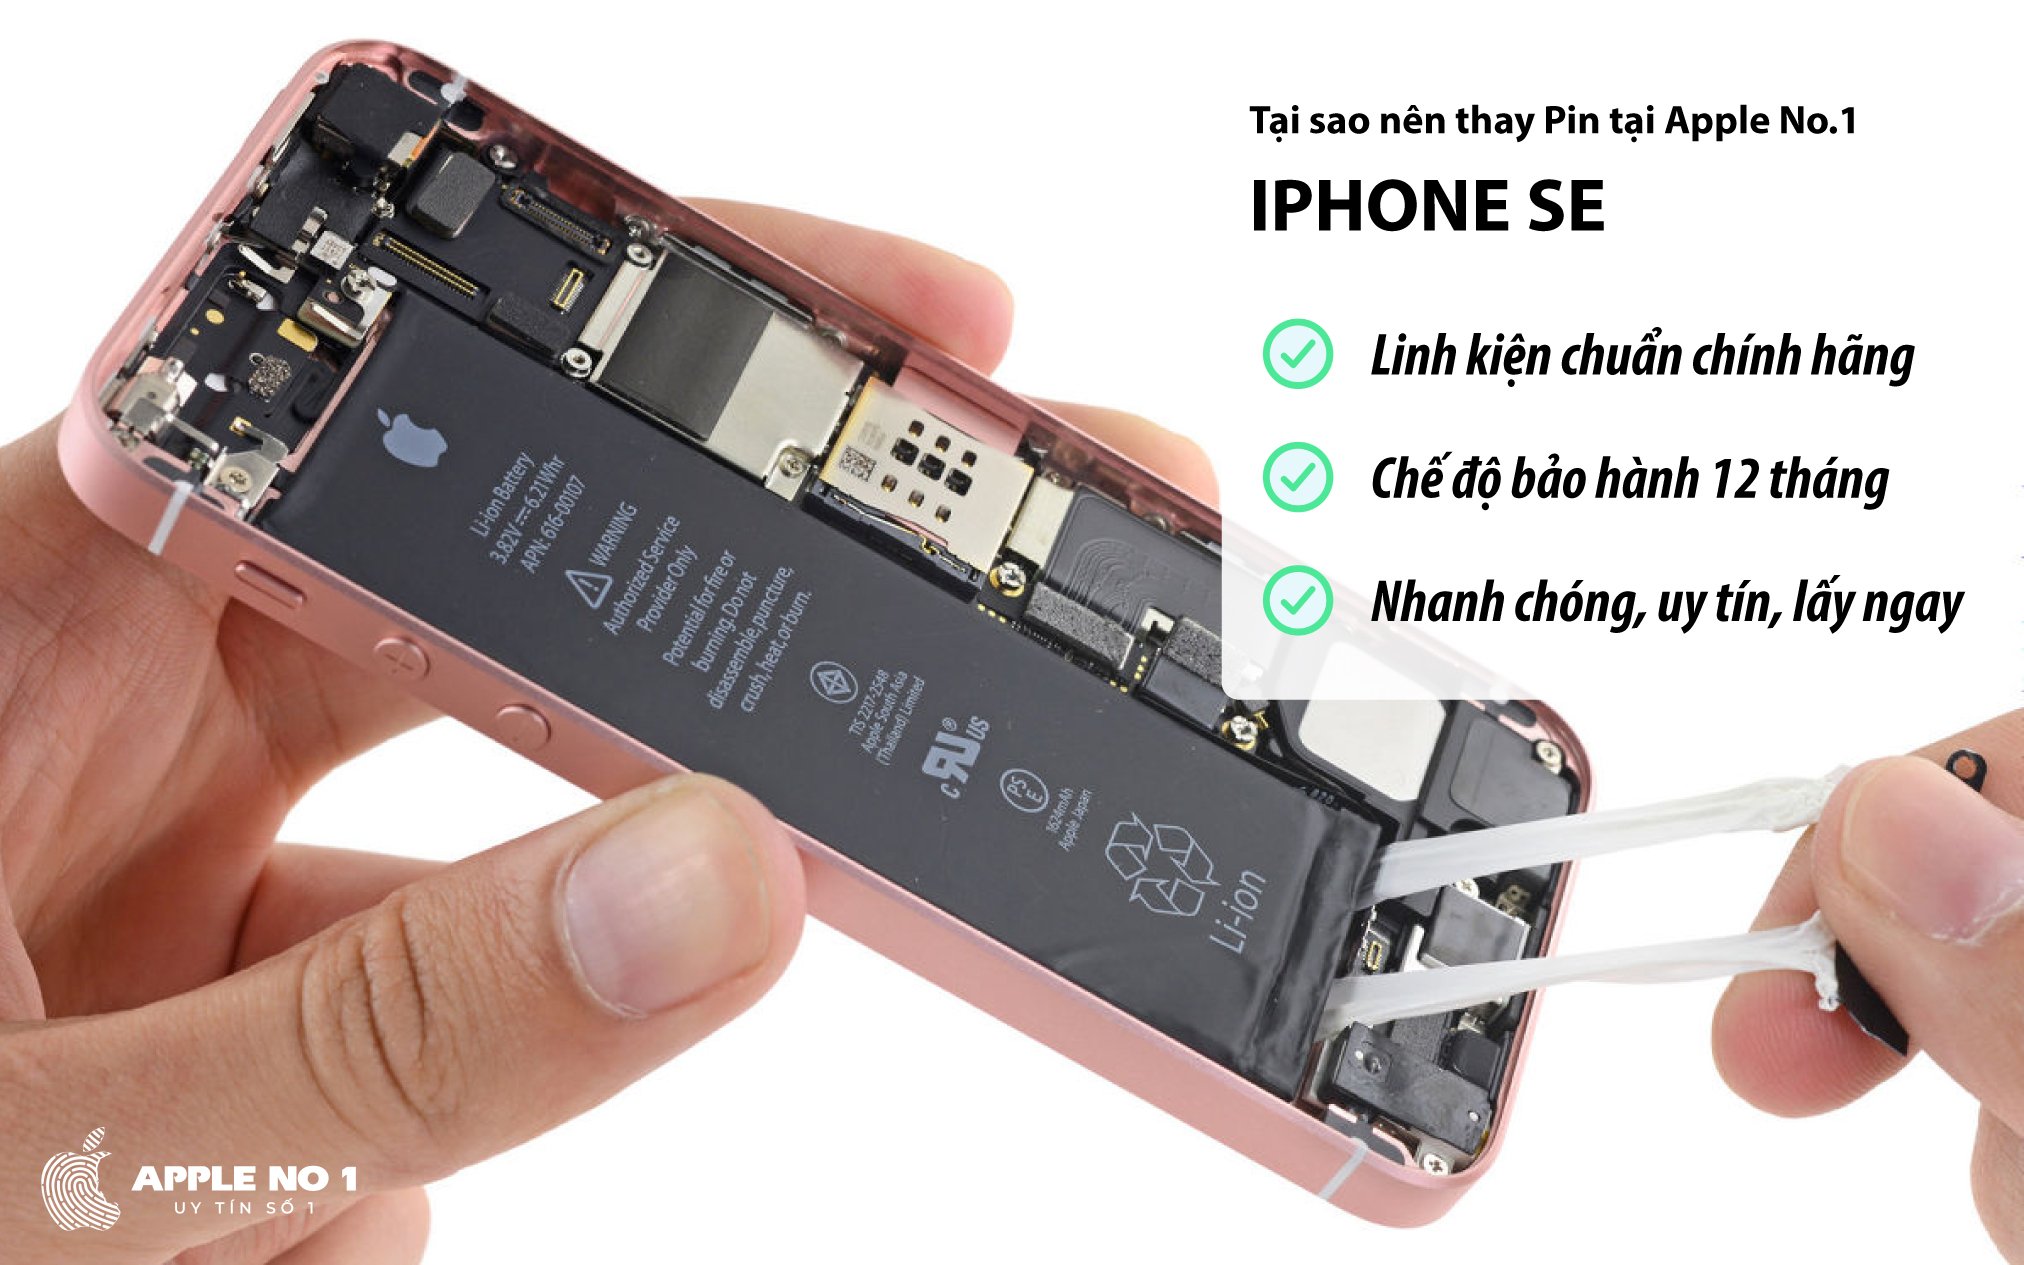 Dịch vụ thay pin iPhone SE dung lượng chuẩn chính hãng tại Apple No.1